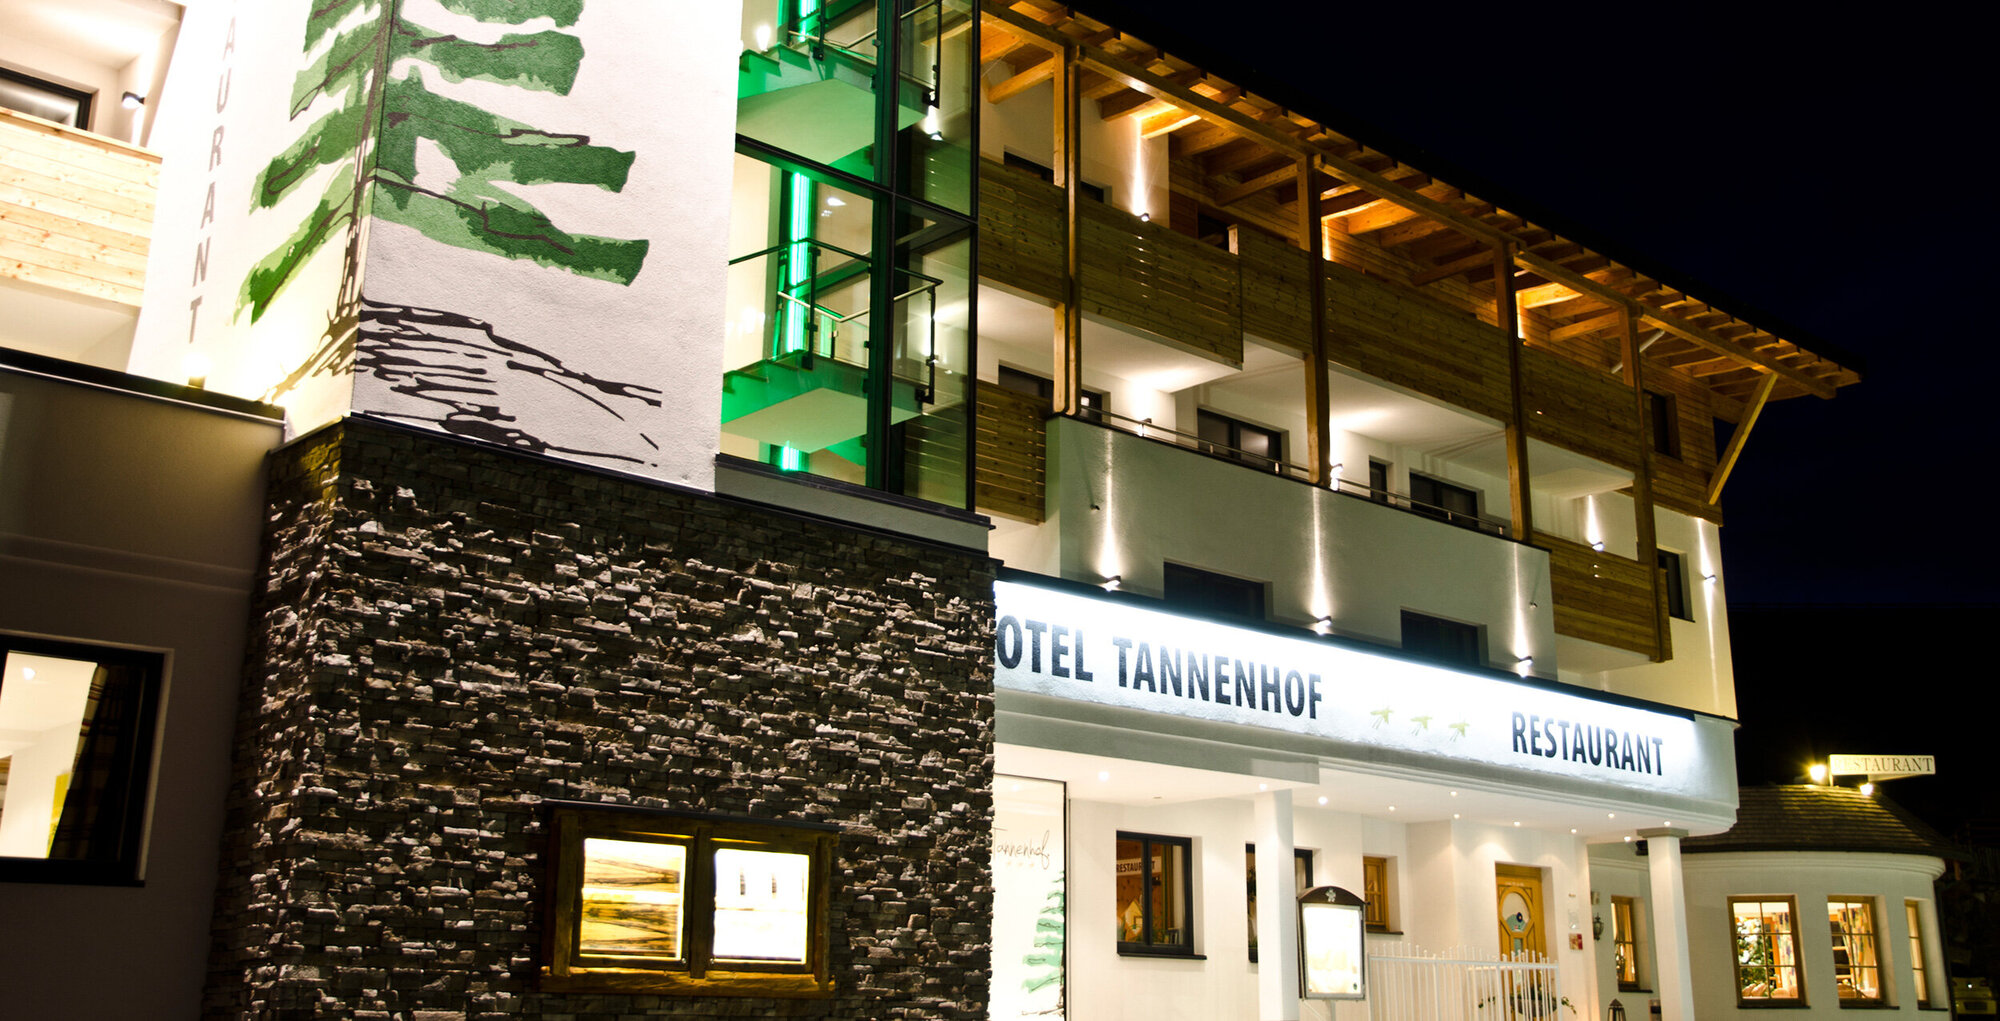  Impressum Hotel Tannenhof Für den Inhalt verantwortlich